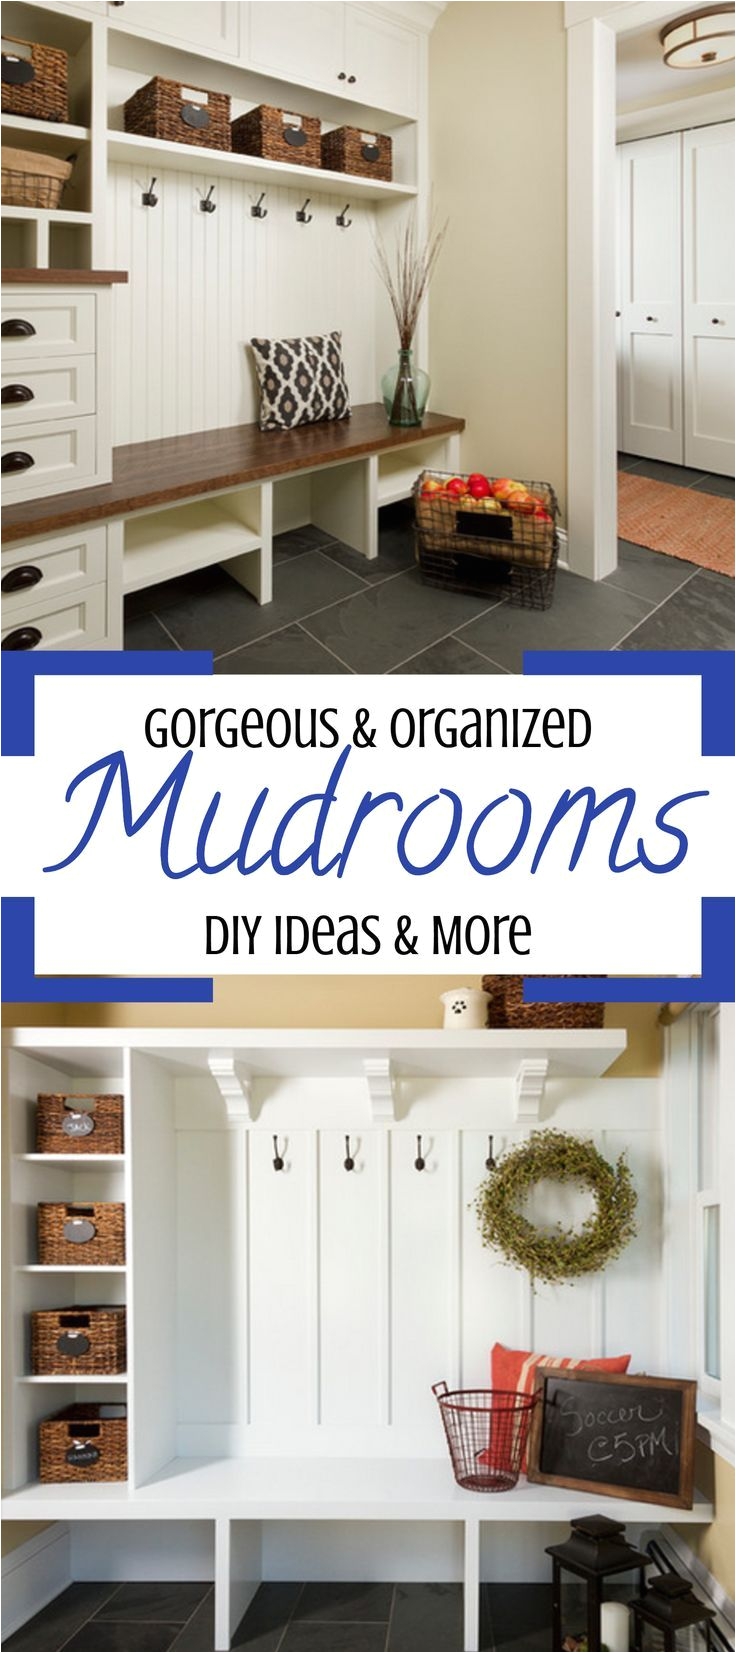 rustic farmhouse diy mudroom designs and mud rooms ideas we love mudroom cubbies cabinets